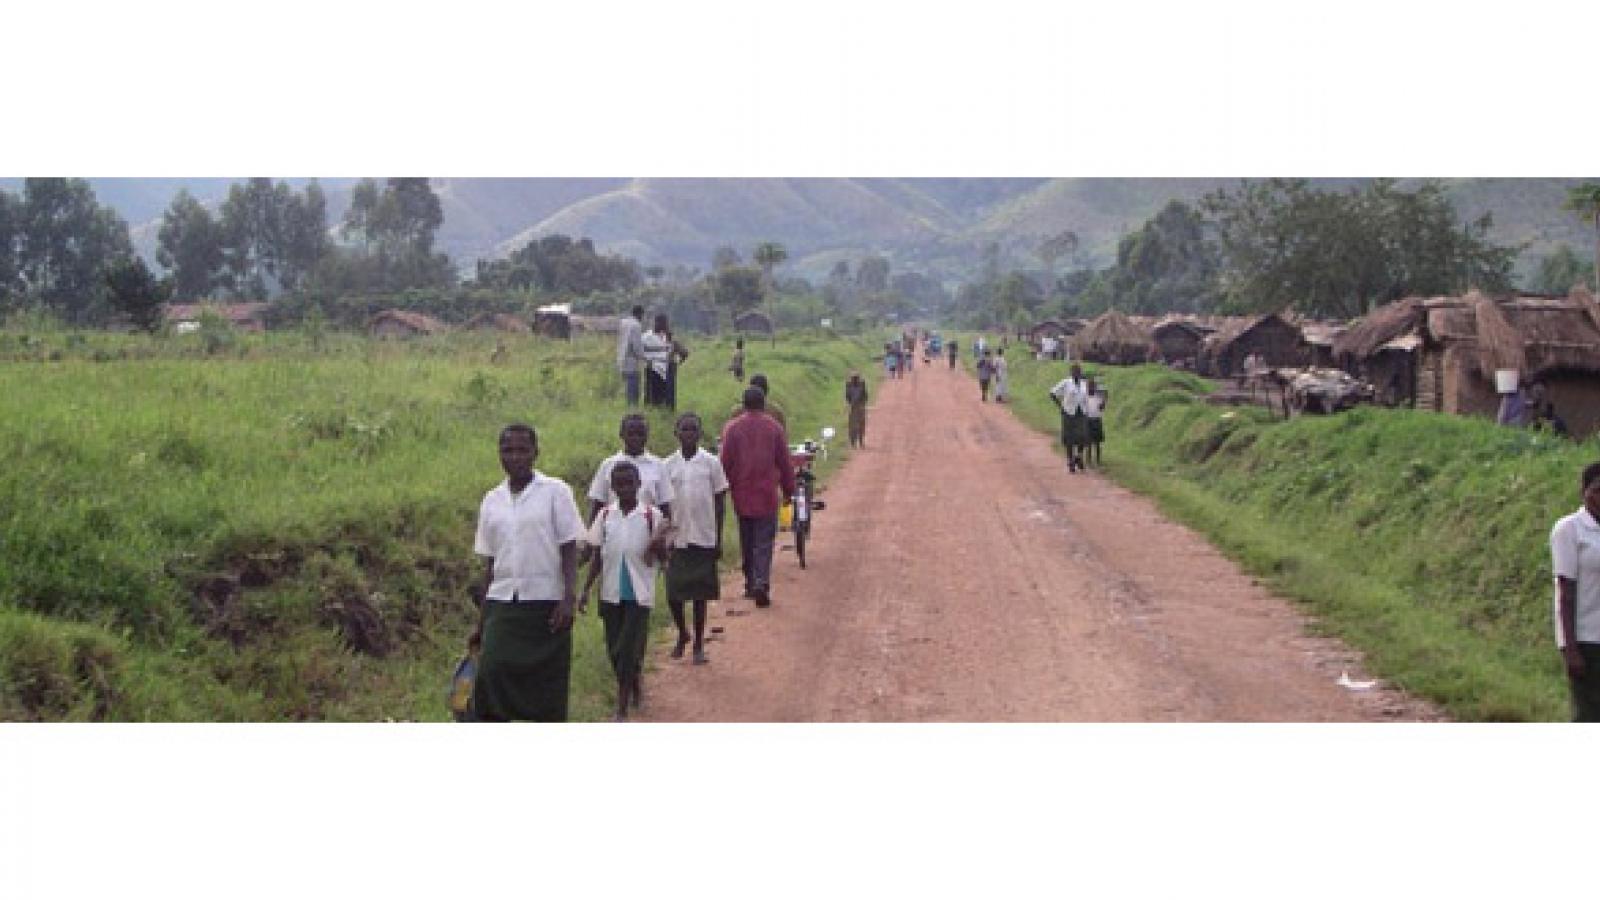 Villagers walk along an African road.